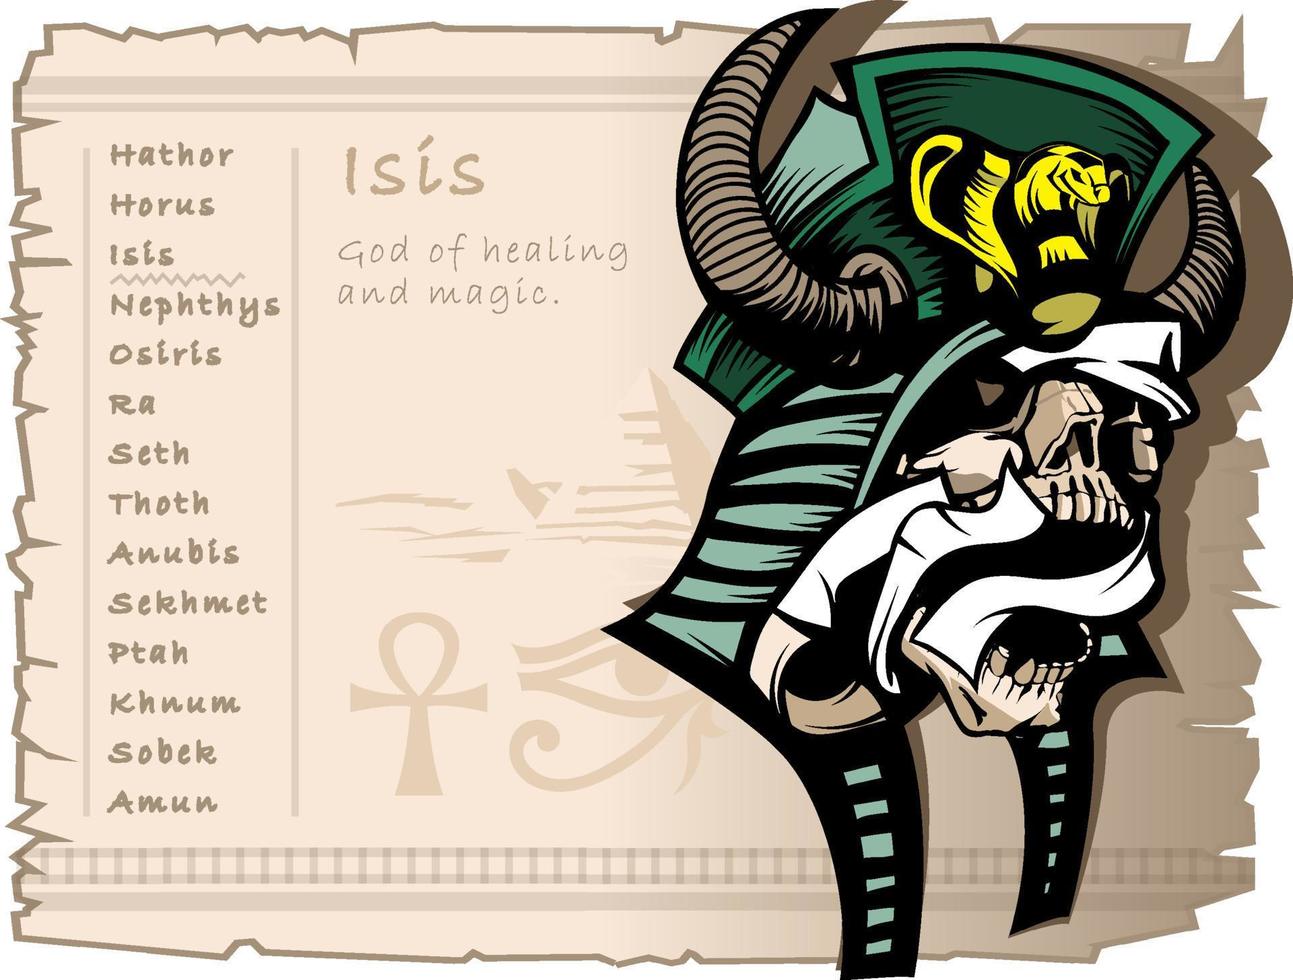 Iside, il dea di Magia e guarigione. antico egiziano mitologia. tatuaggio modello e magliette. vettore